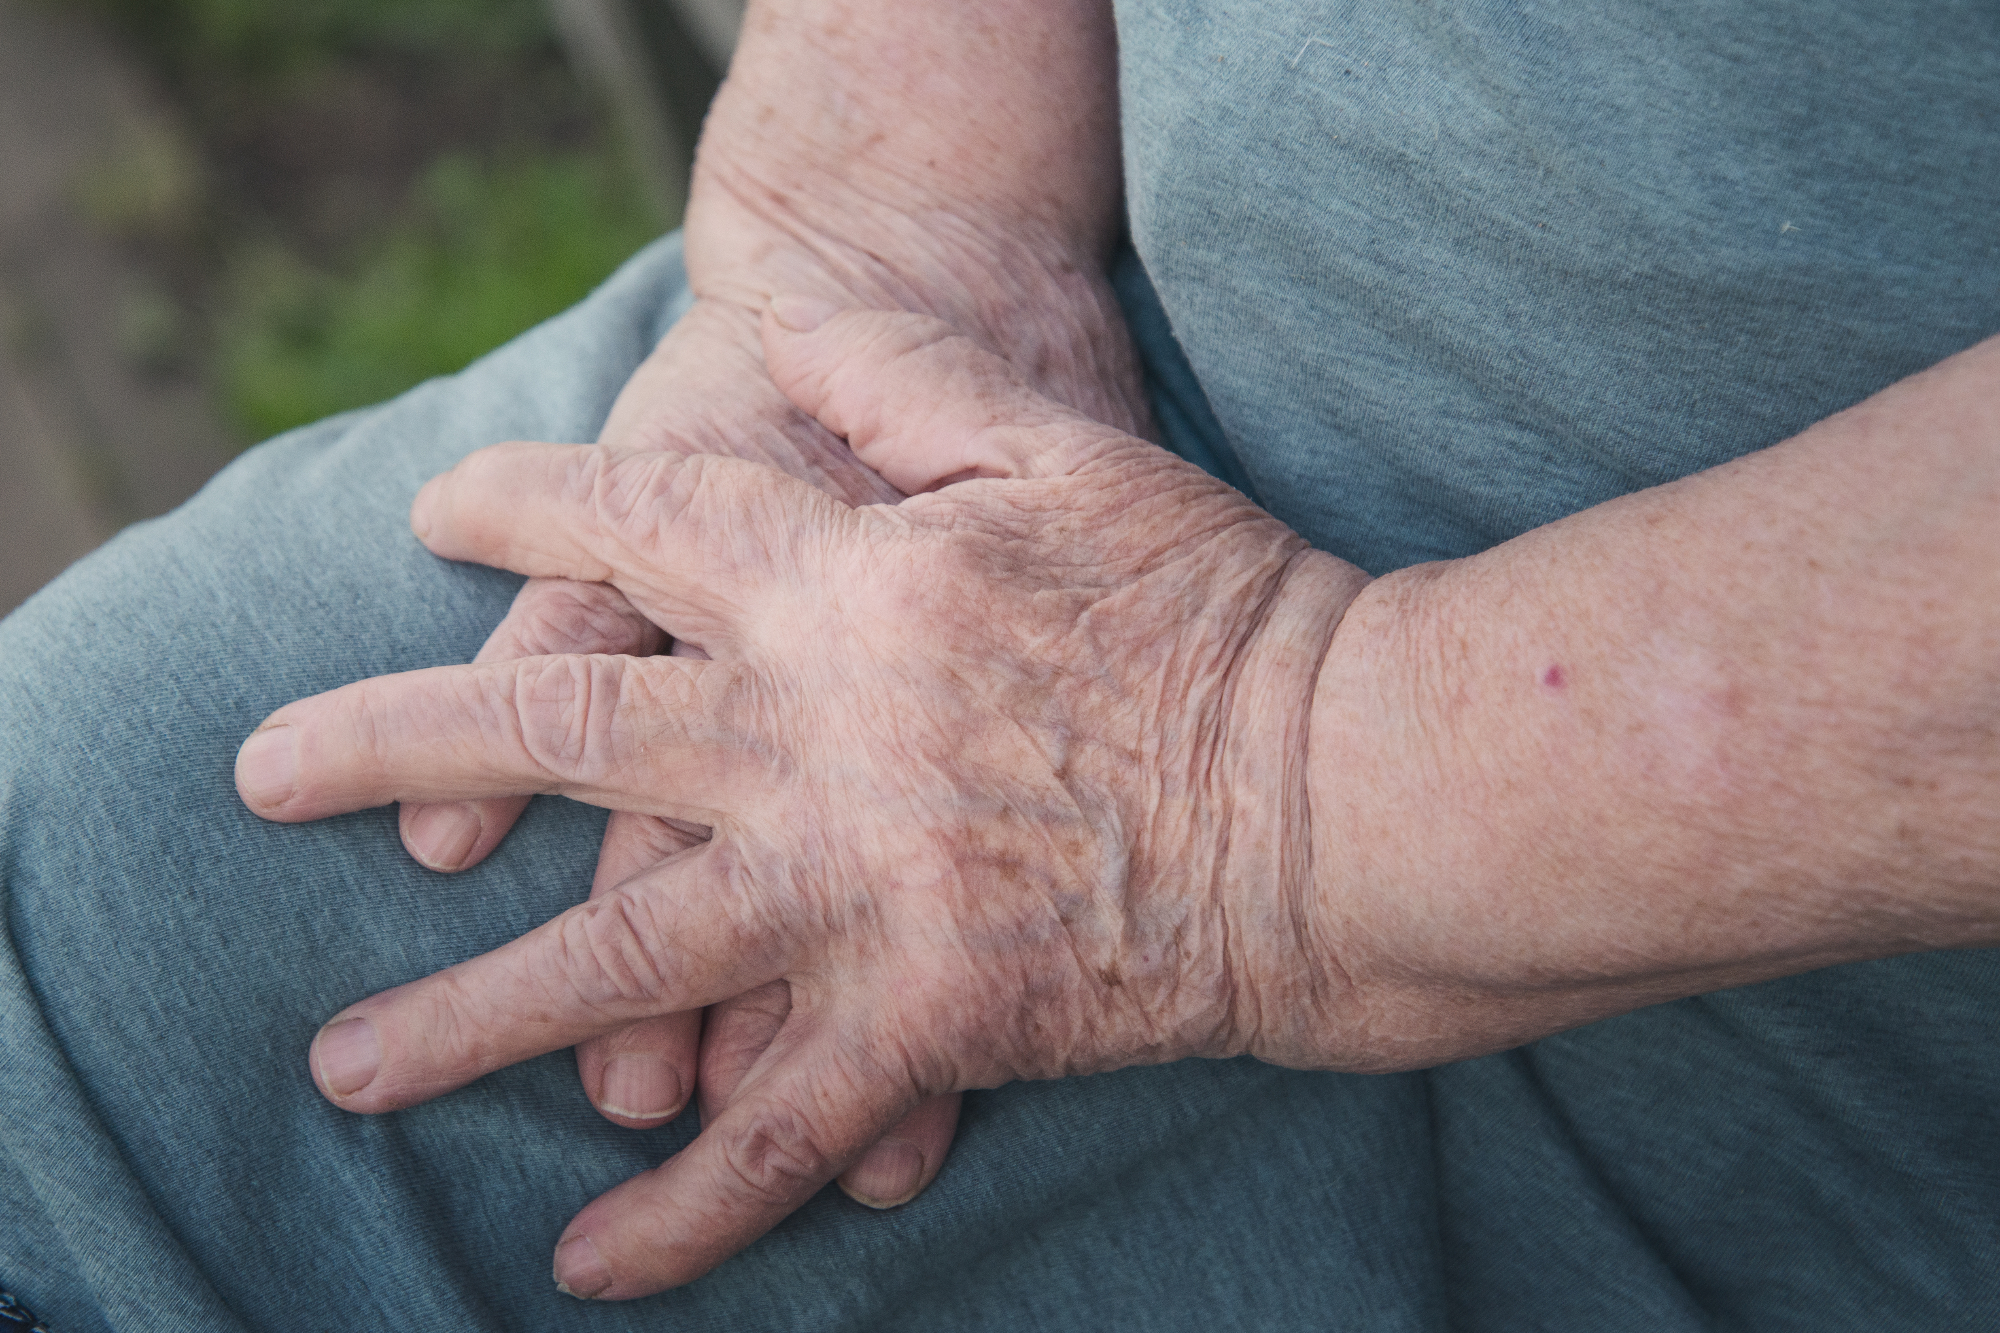 Revmatoidni artritis je nekaj kar se načeloma ne opazi